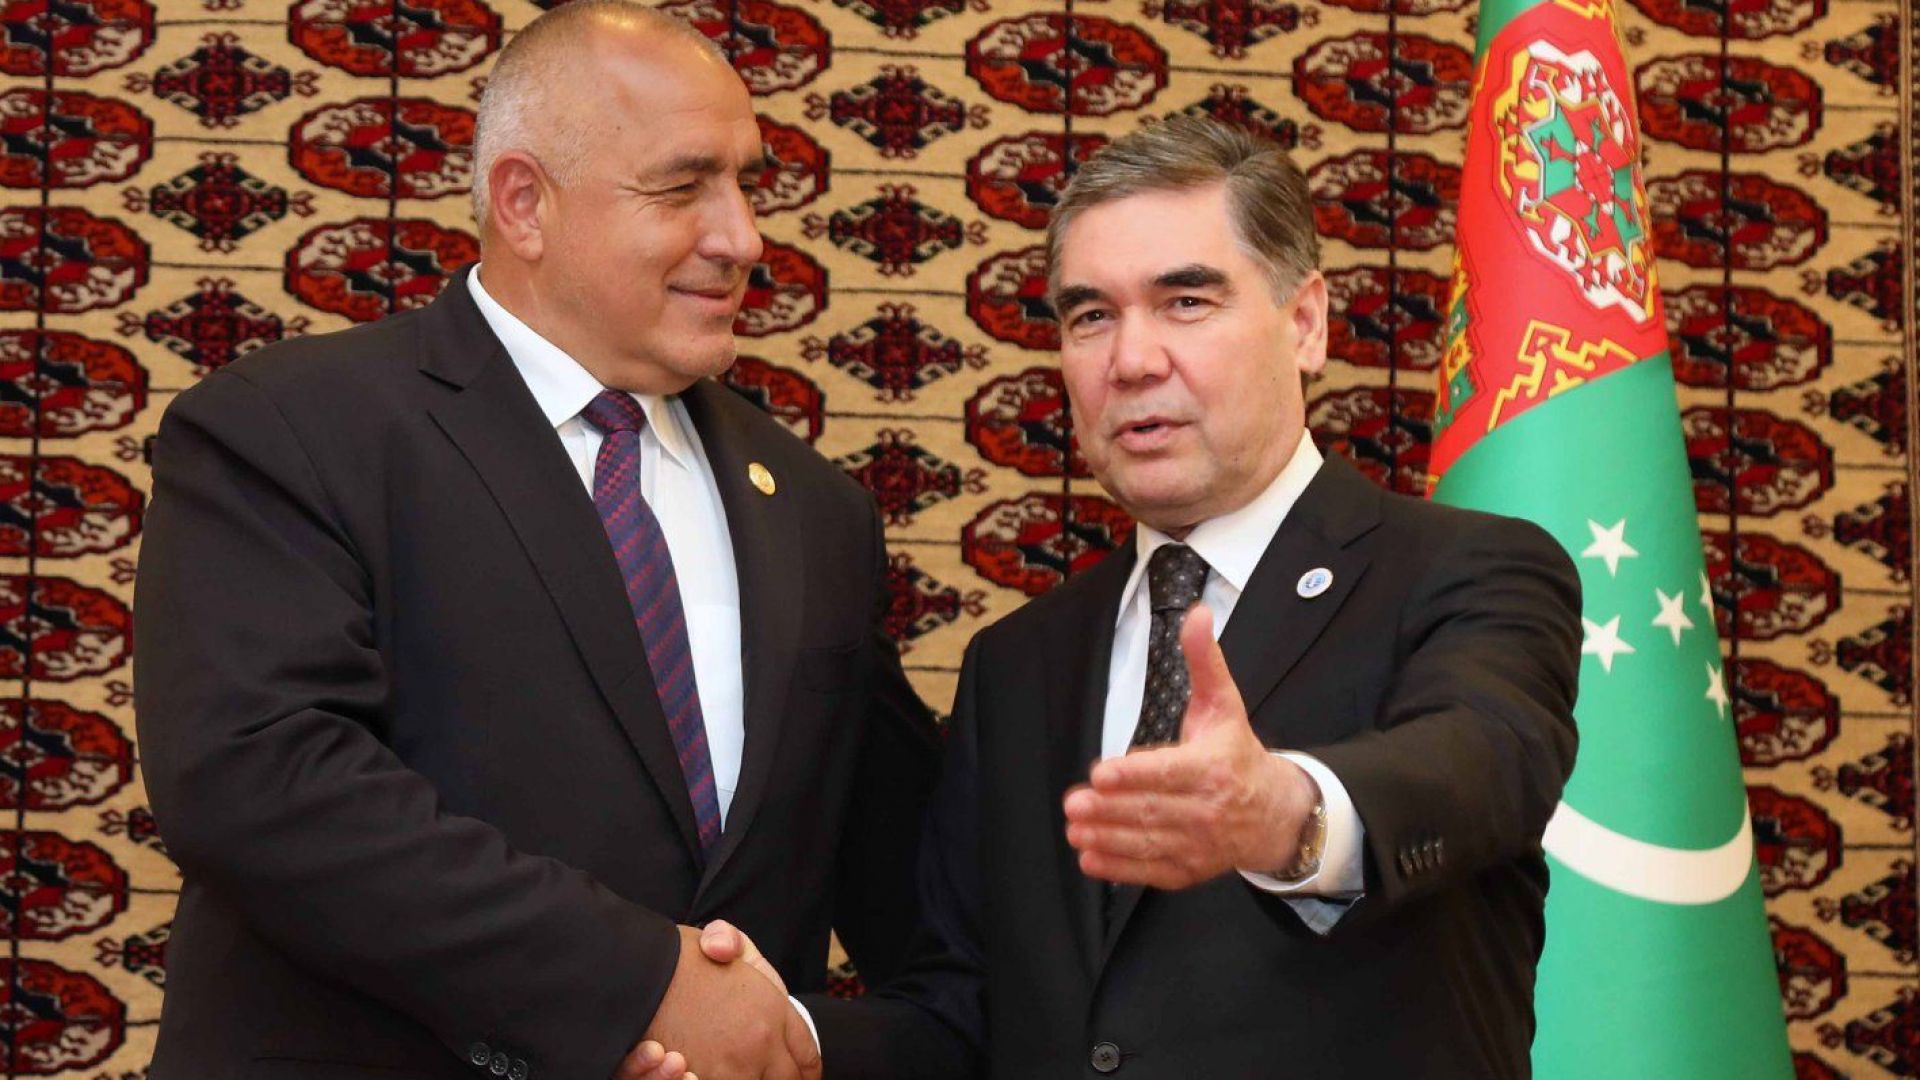 Отношенията между България и Туркменистан са важни и перспективни Убеден